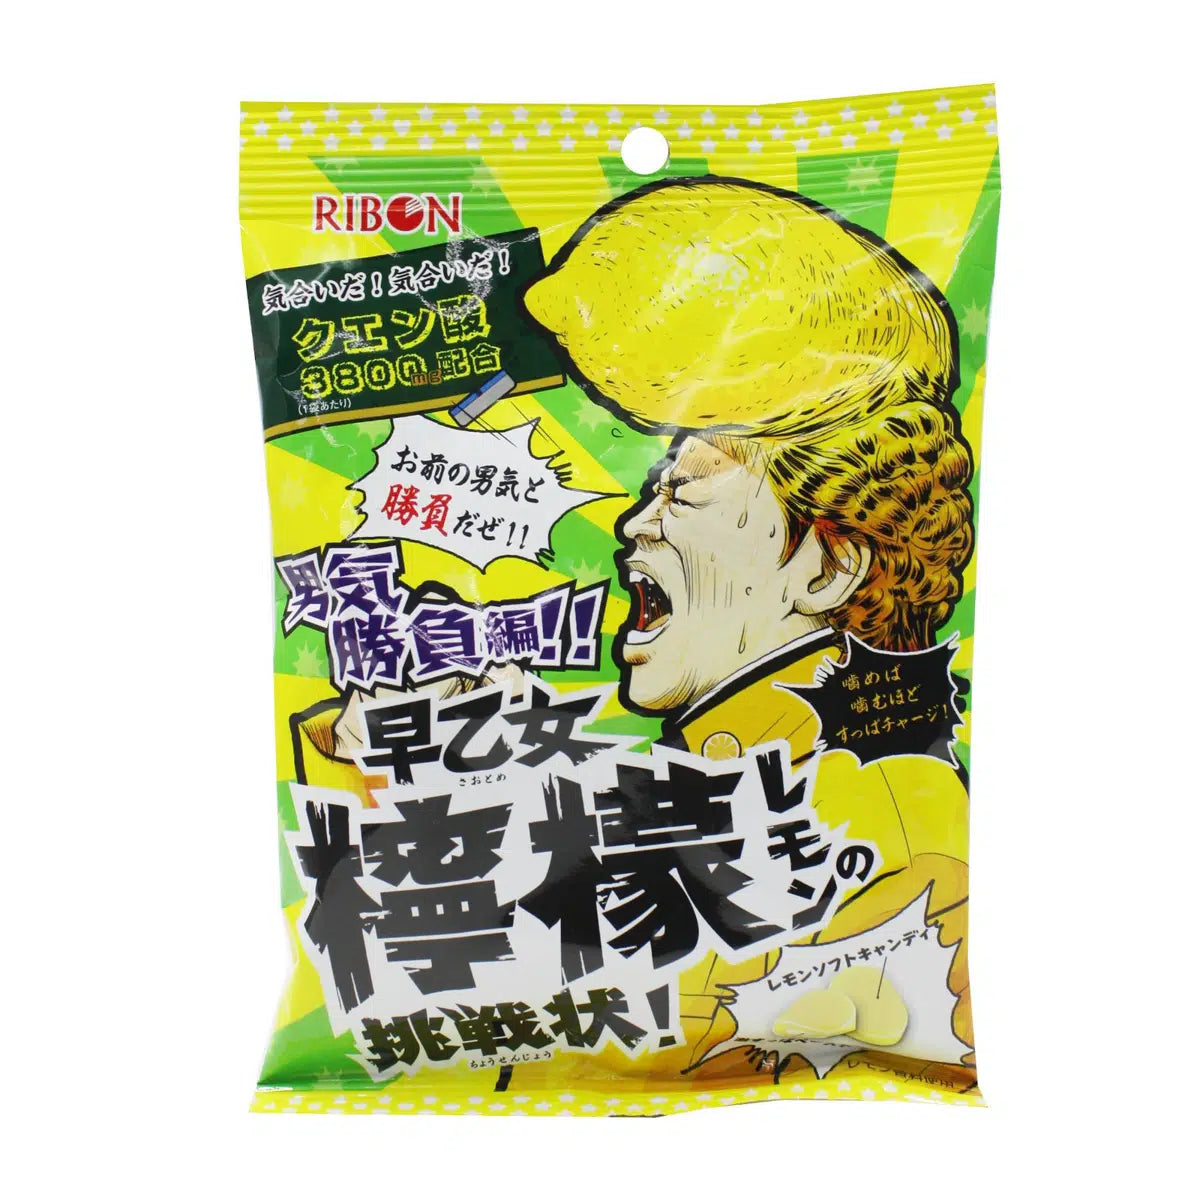 Ribon Lemon No Chosenjyo Sweet Candy (Japan)